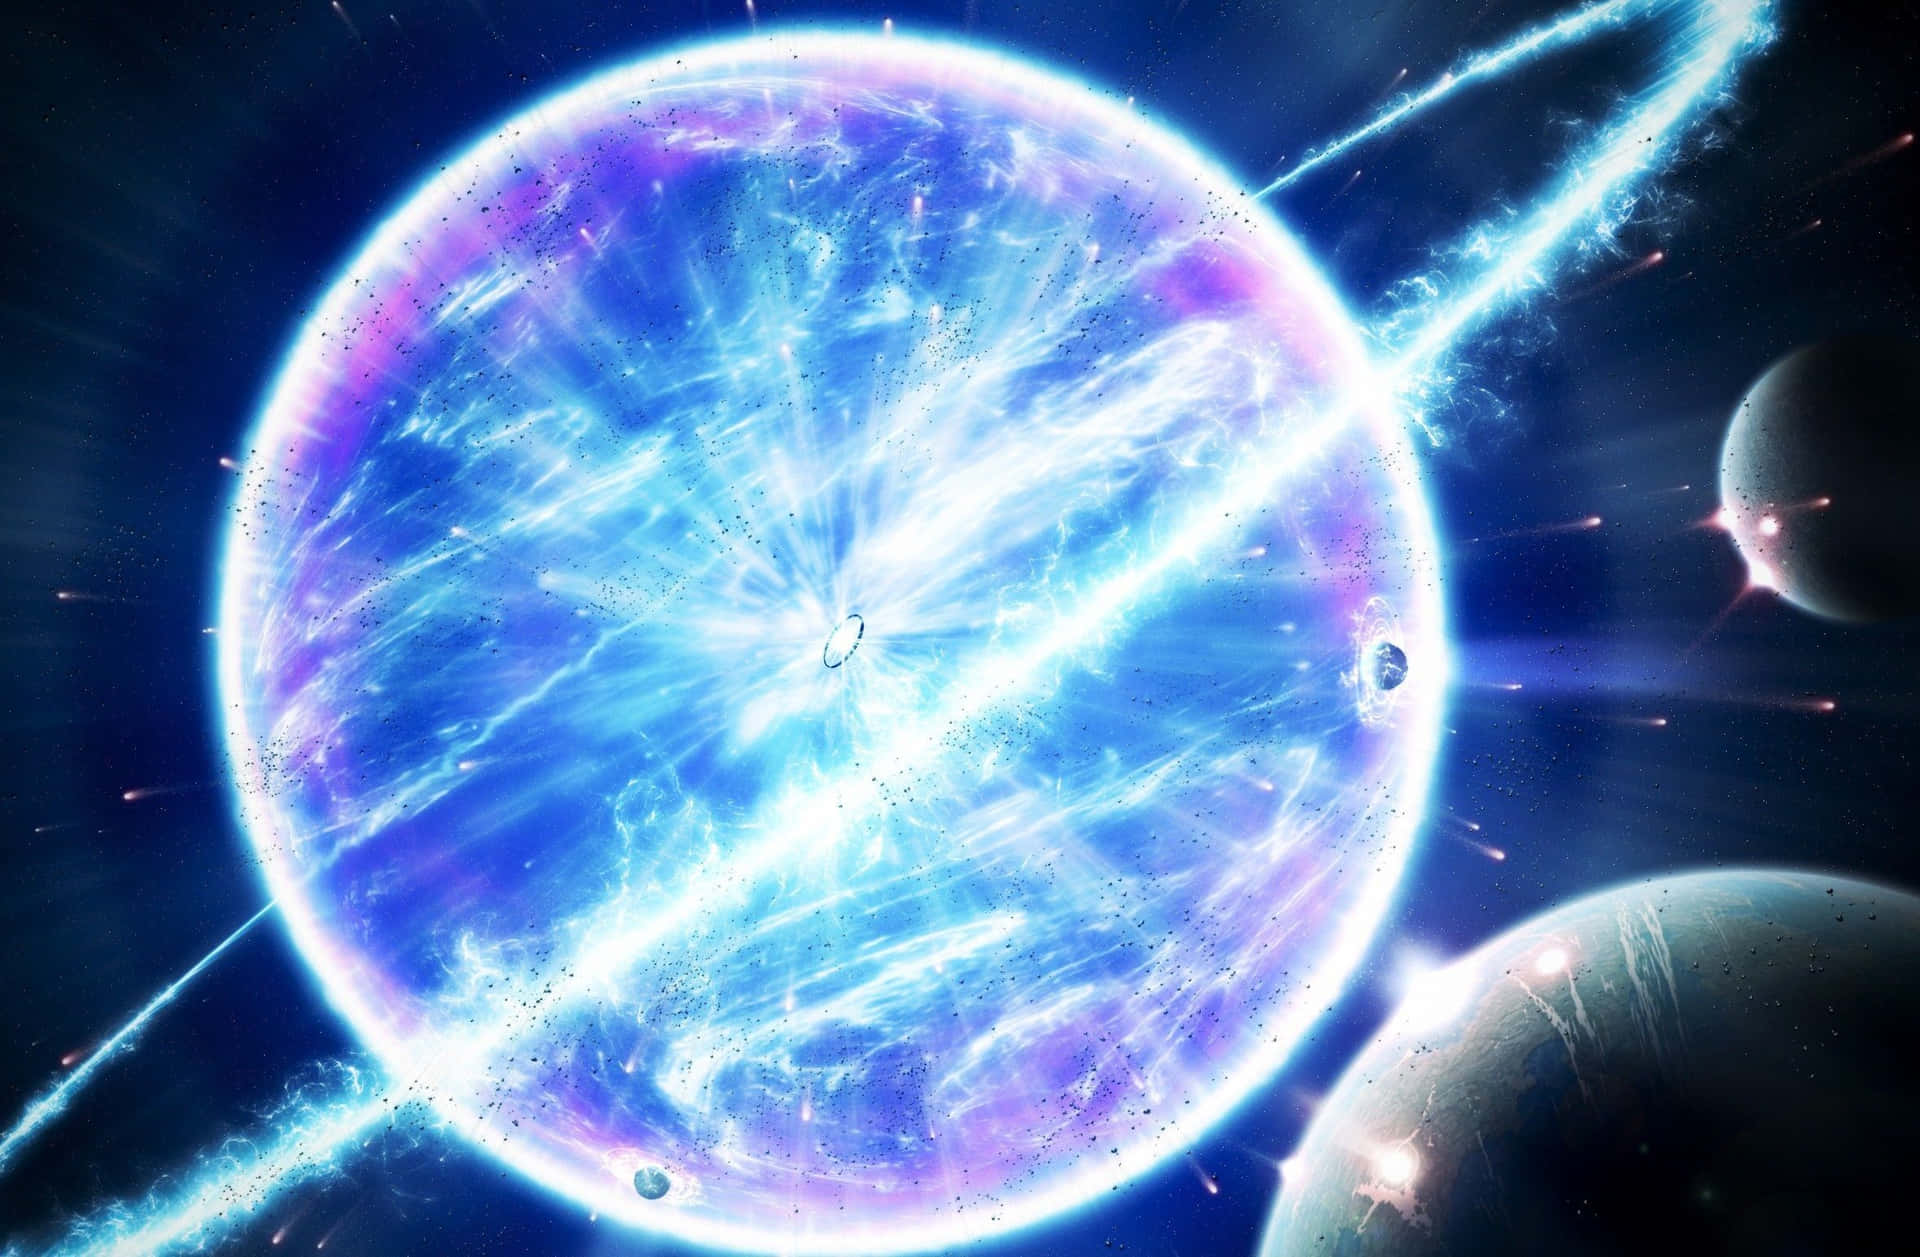 Unaimpresionante Imagen De Una Explosión De Supernova En El Espacio Exterior.